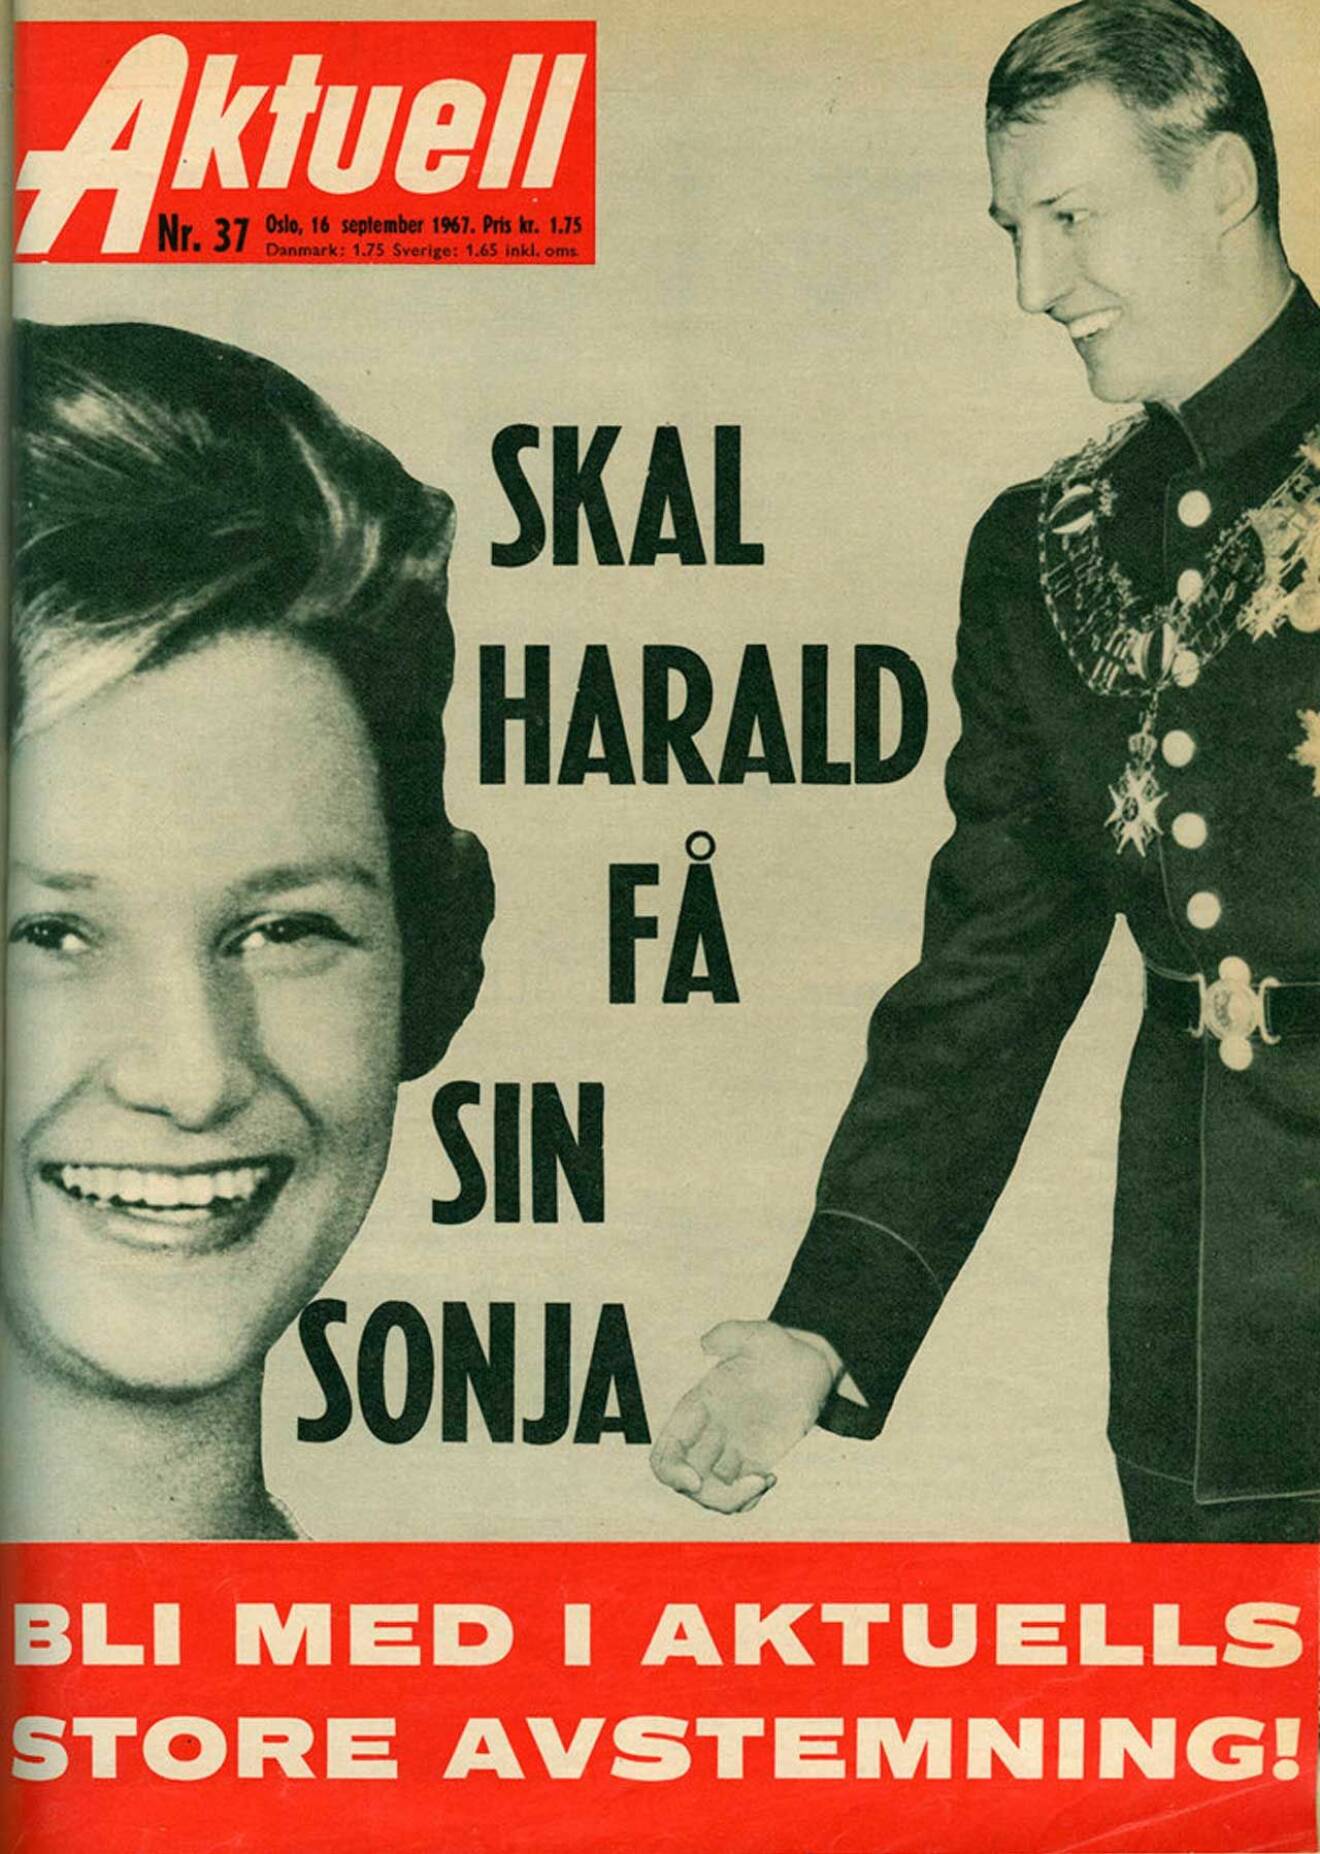 Sonjas och Haralds kärleksdrama på löpsedlarna. Faksimil av tidningen Aktuell från september 1967.